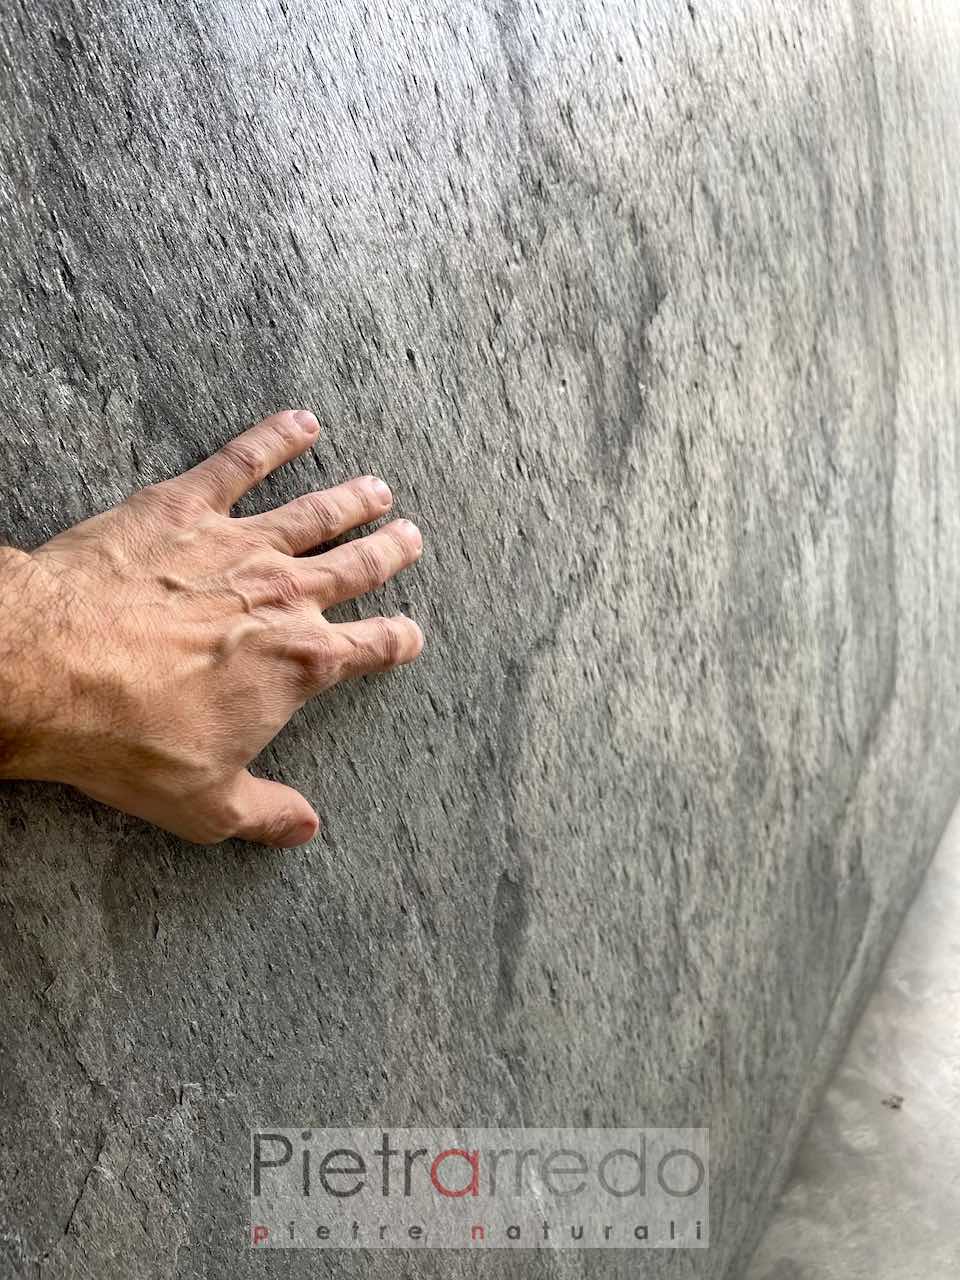 Verkleidung eines flexiblen Steins unter 1 mm silbergrau grau pietrarredo cost italystone